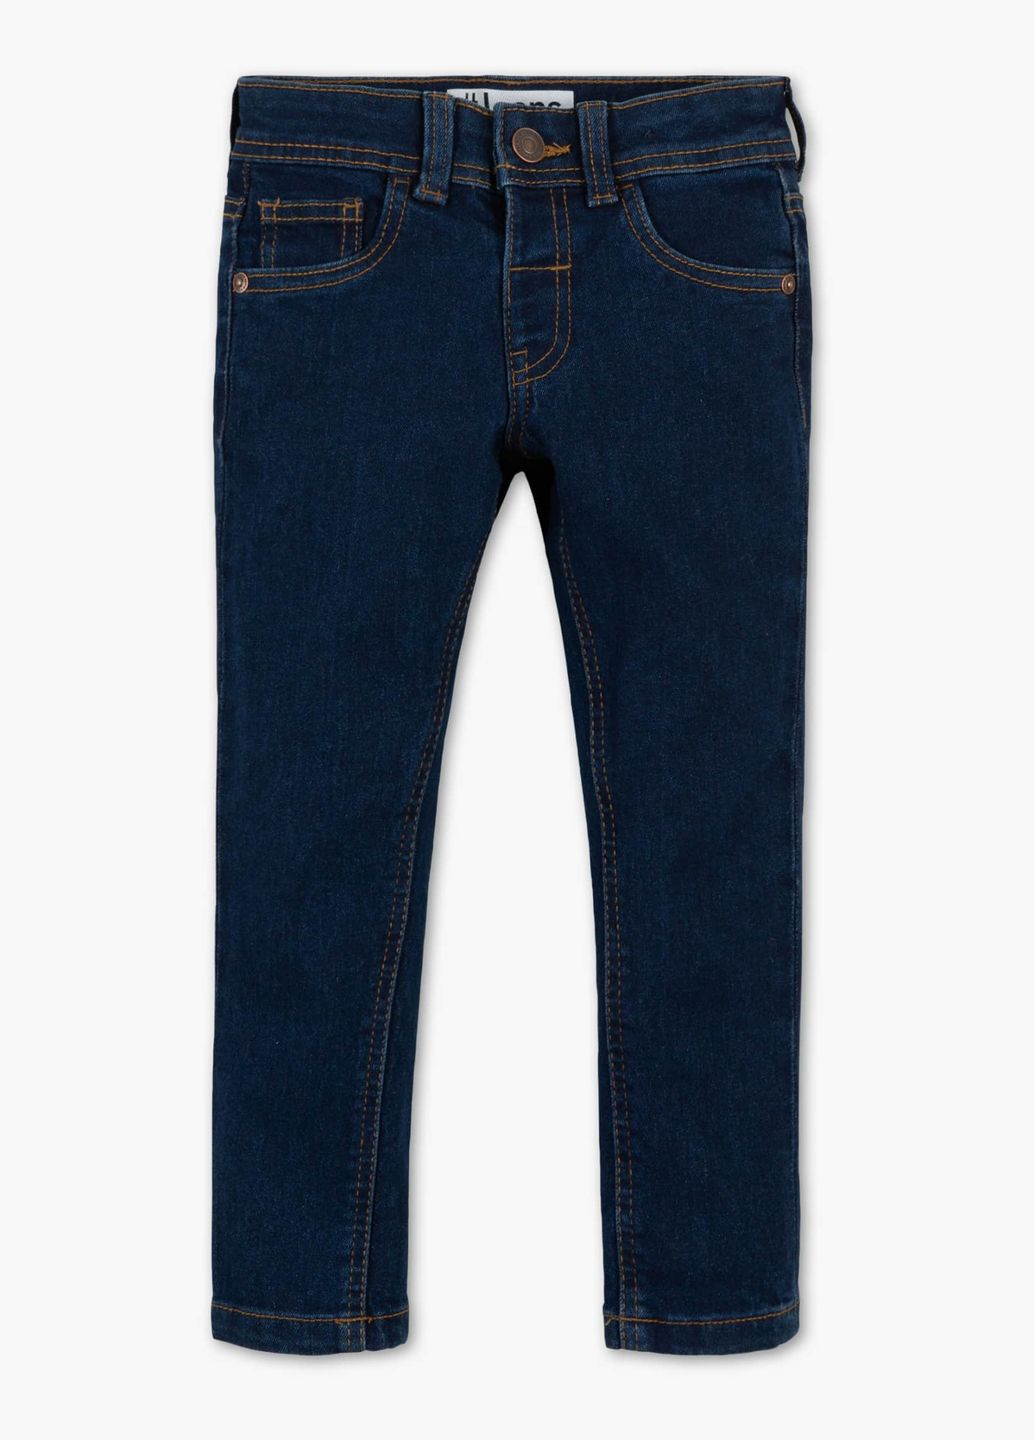 Синие демисезонные джинсы для мальчика синие 2039798 C&A